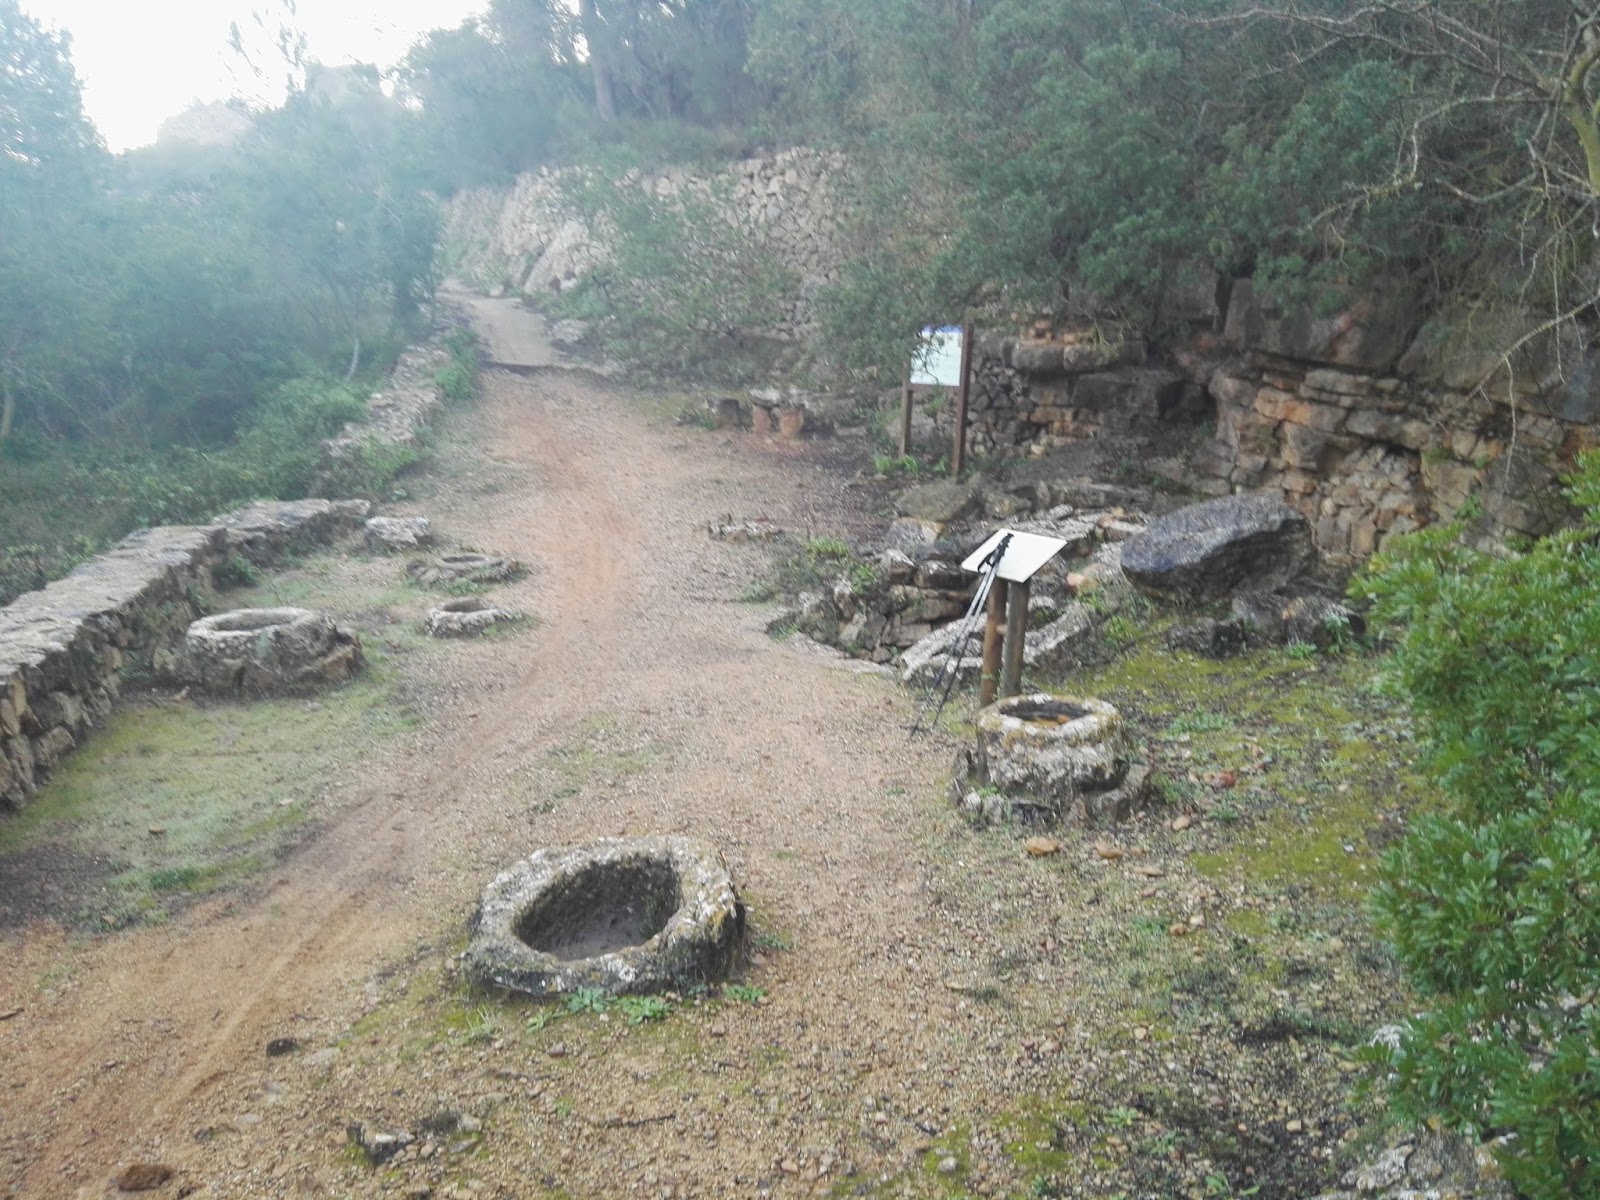 La Font de la Mata en Gata de Gorgos, Alicante